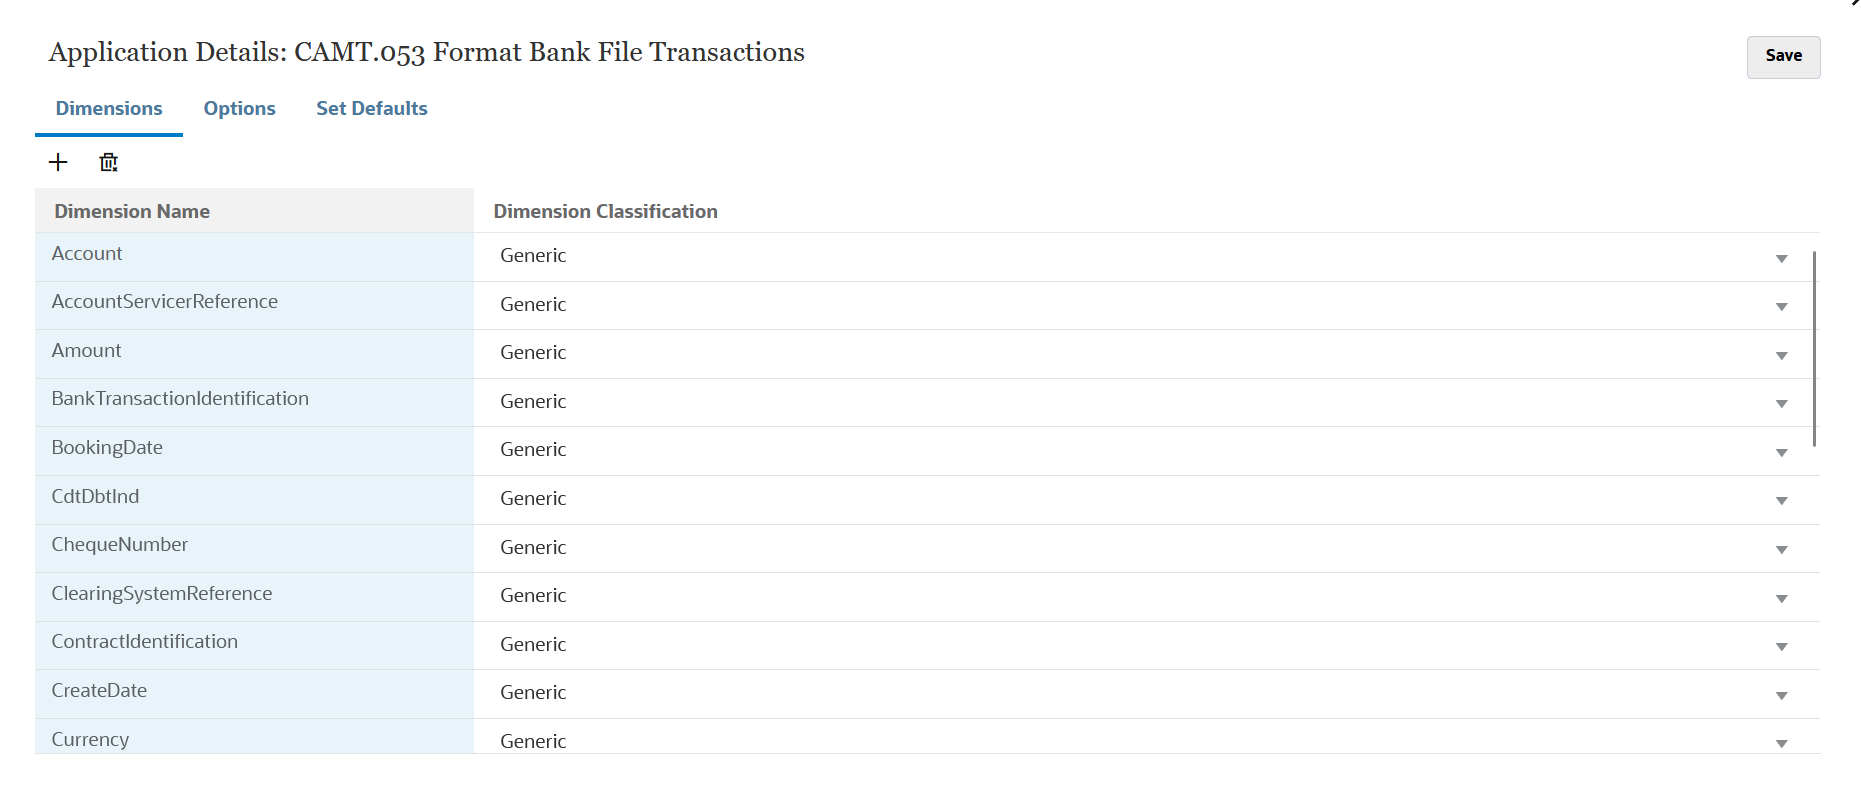 En la imagen se muestran las dimensiones de una aplicación de transacciones de archivo bancario CAMT.053.